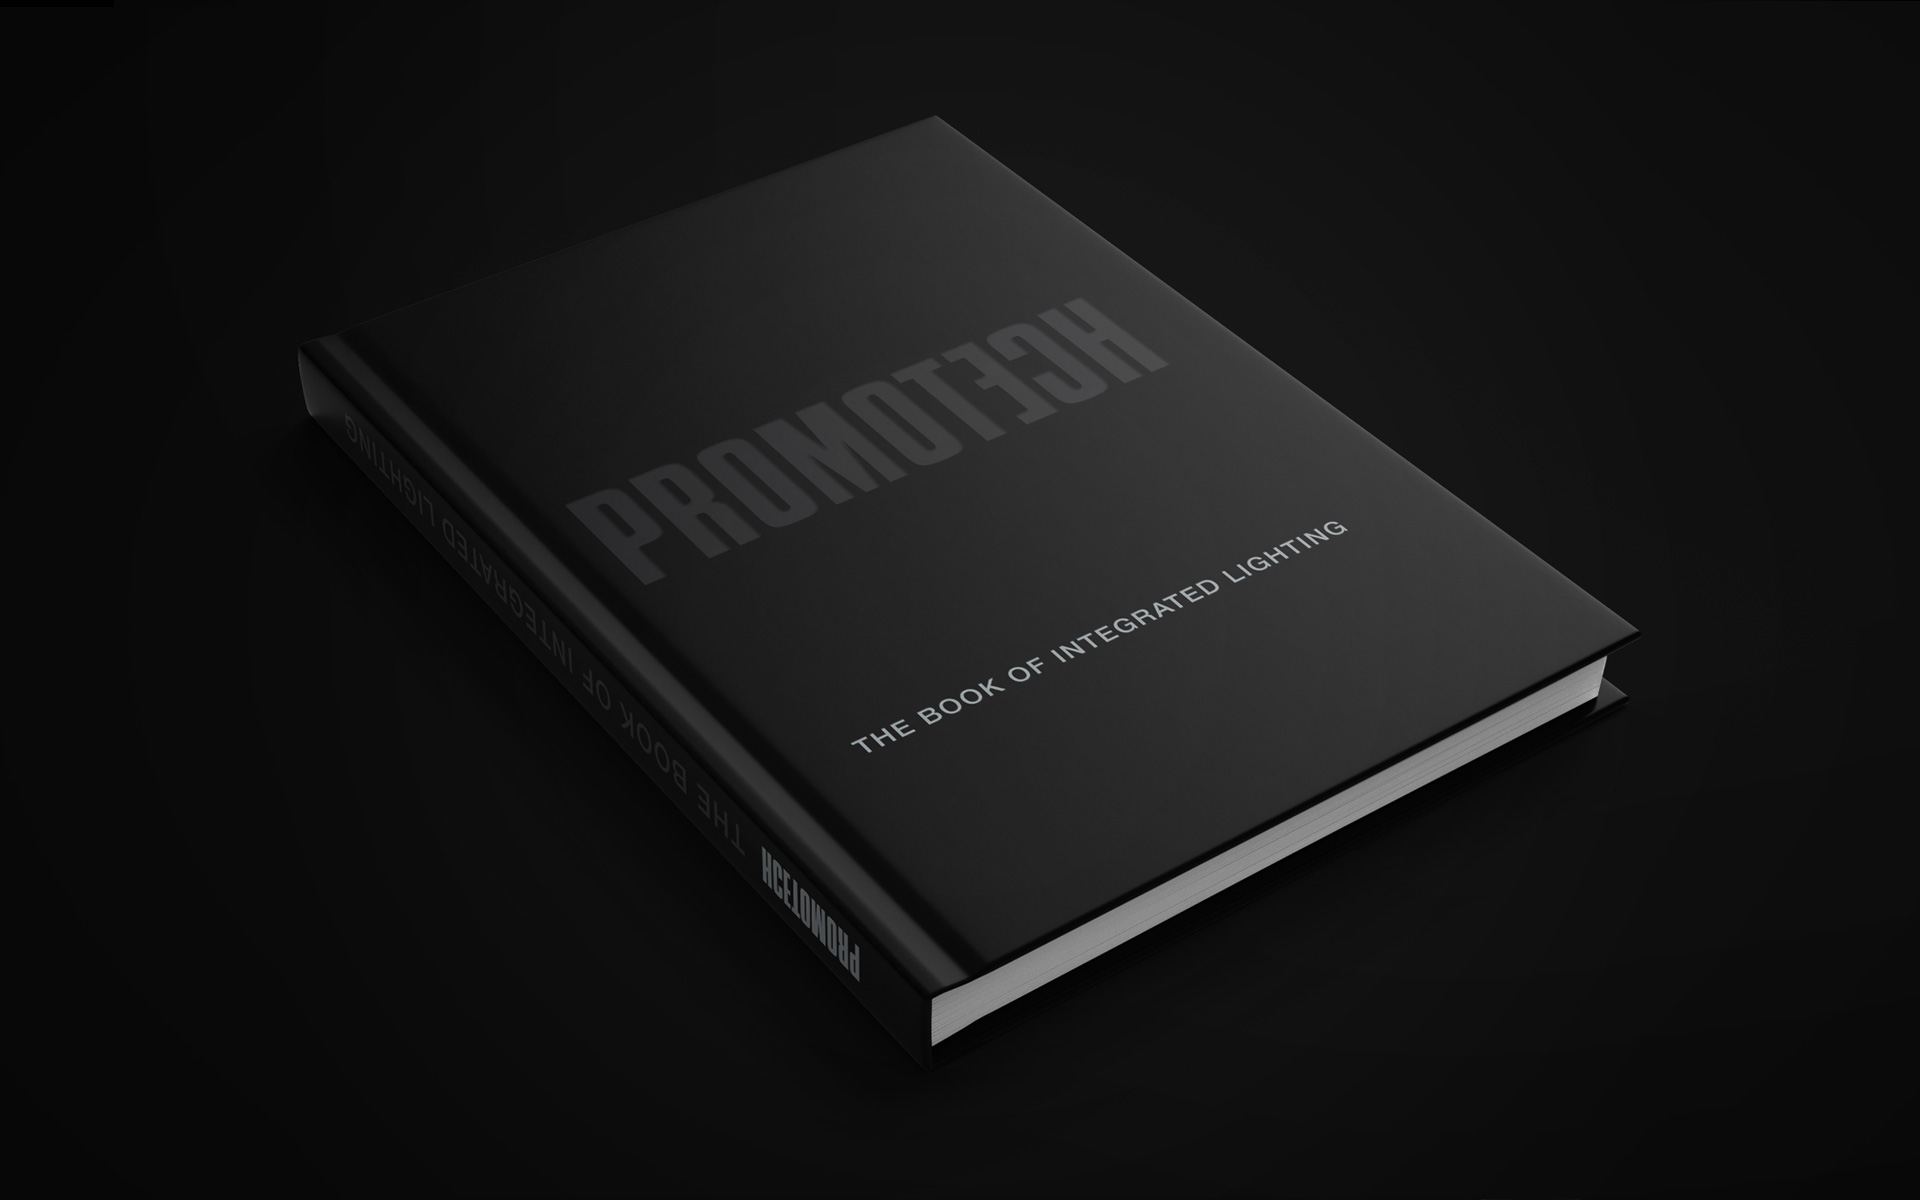 Promotech catalogue by Start